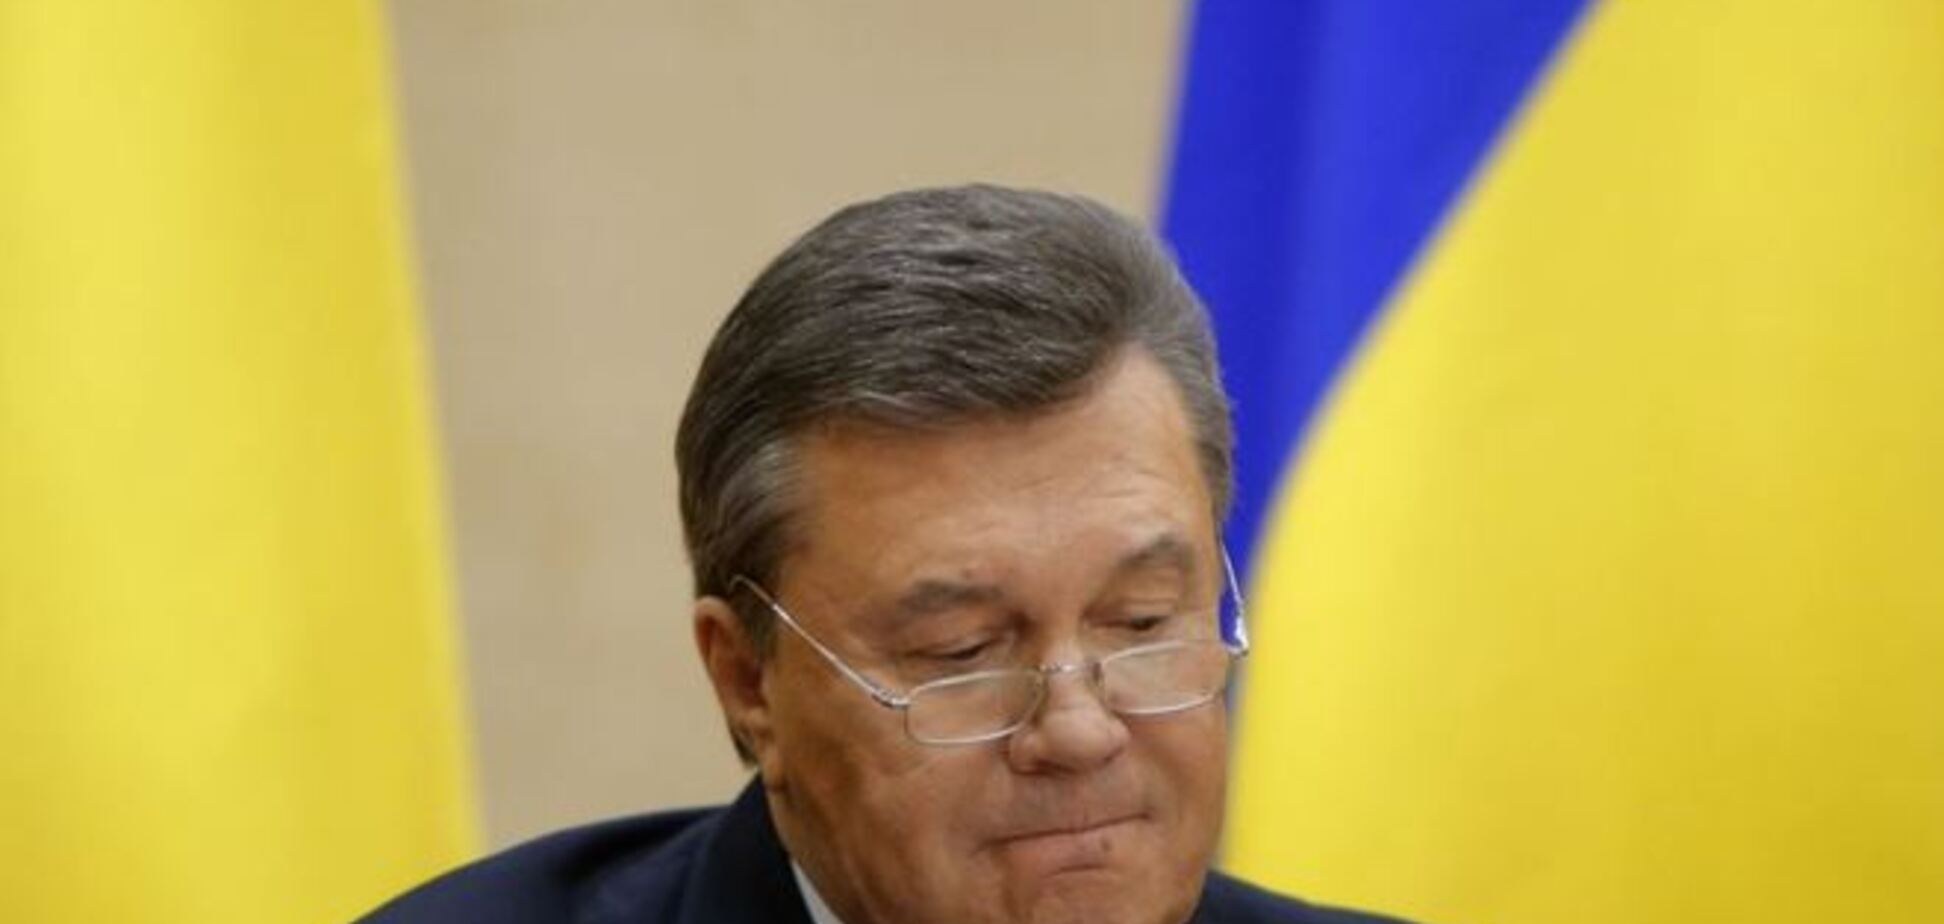 ЗМІ: Янукович з громадянською дружиною оселився в Сочі